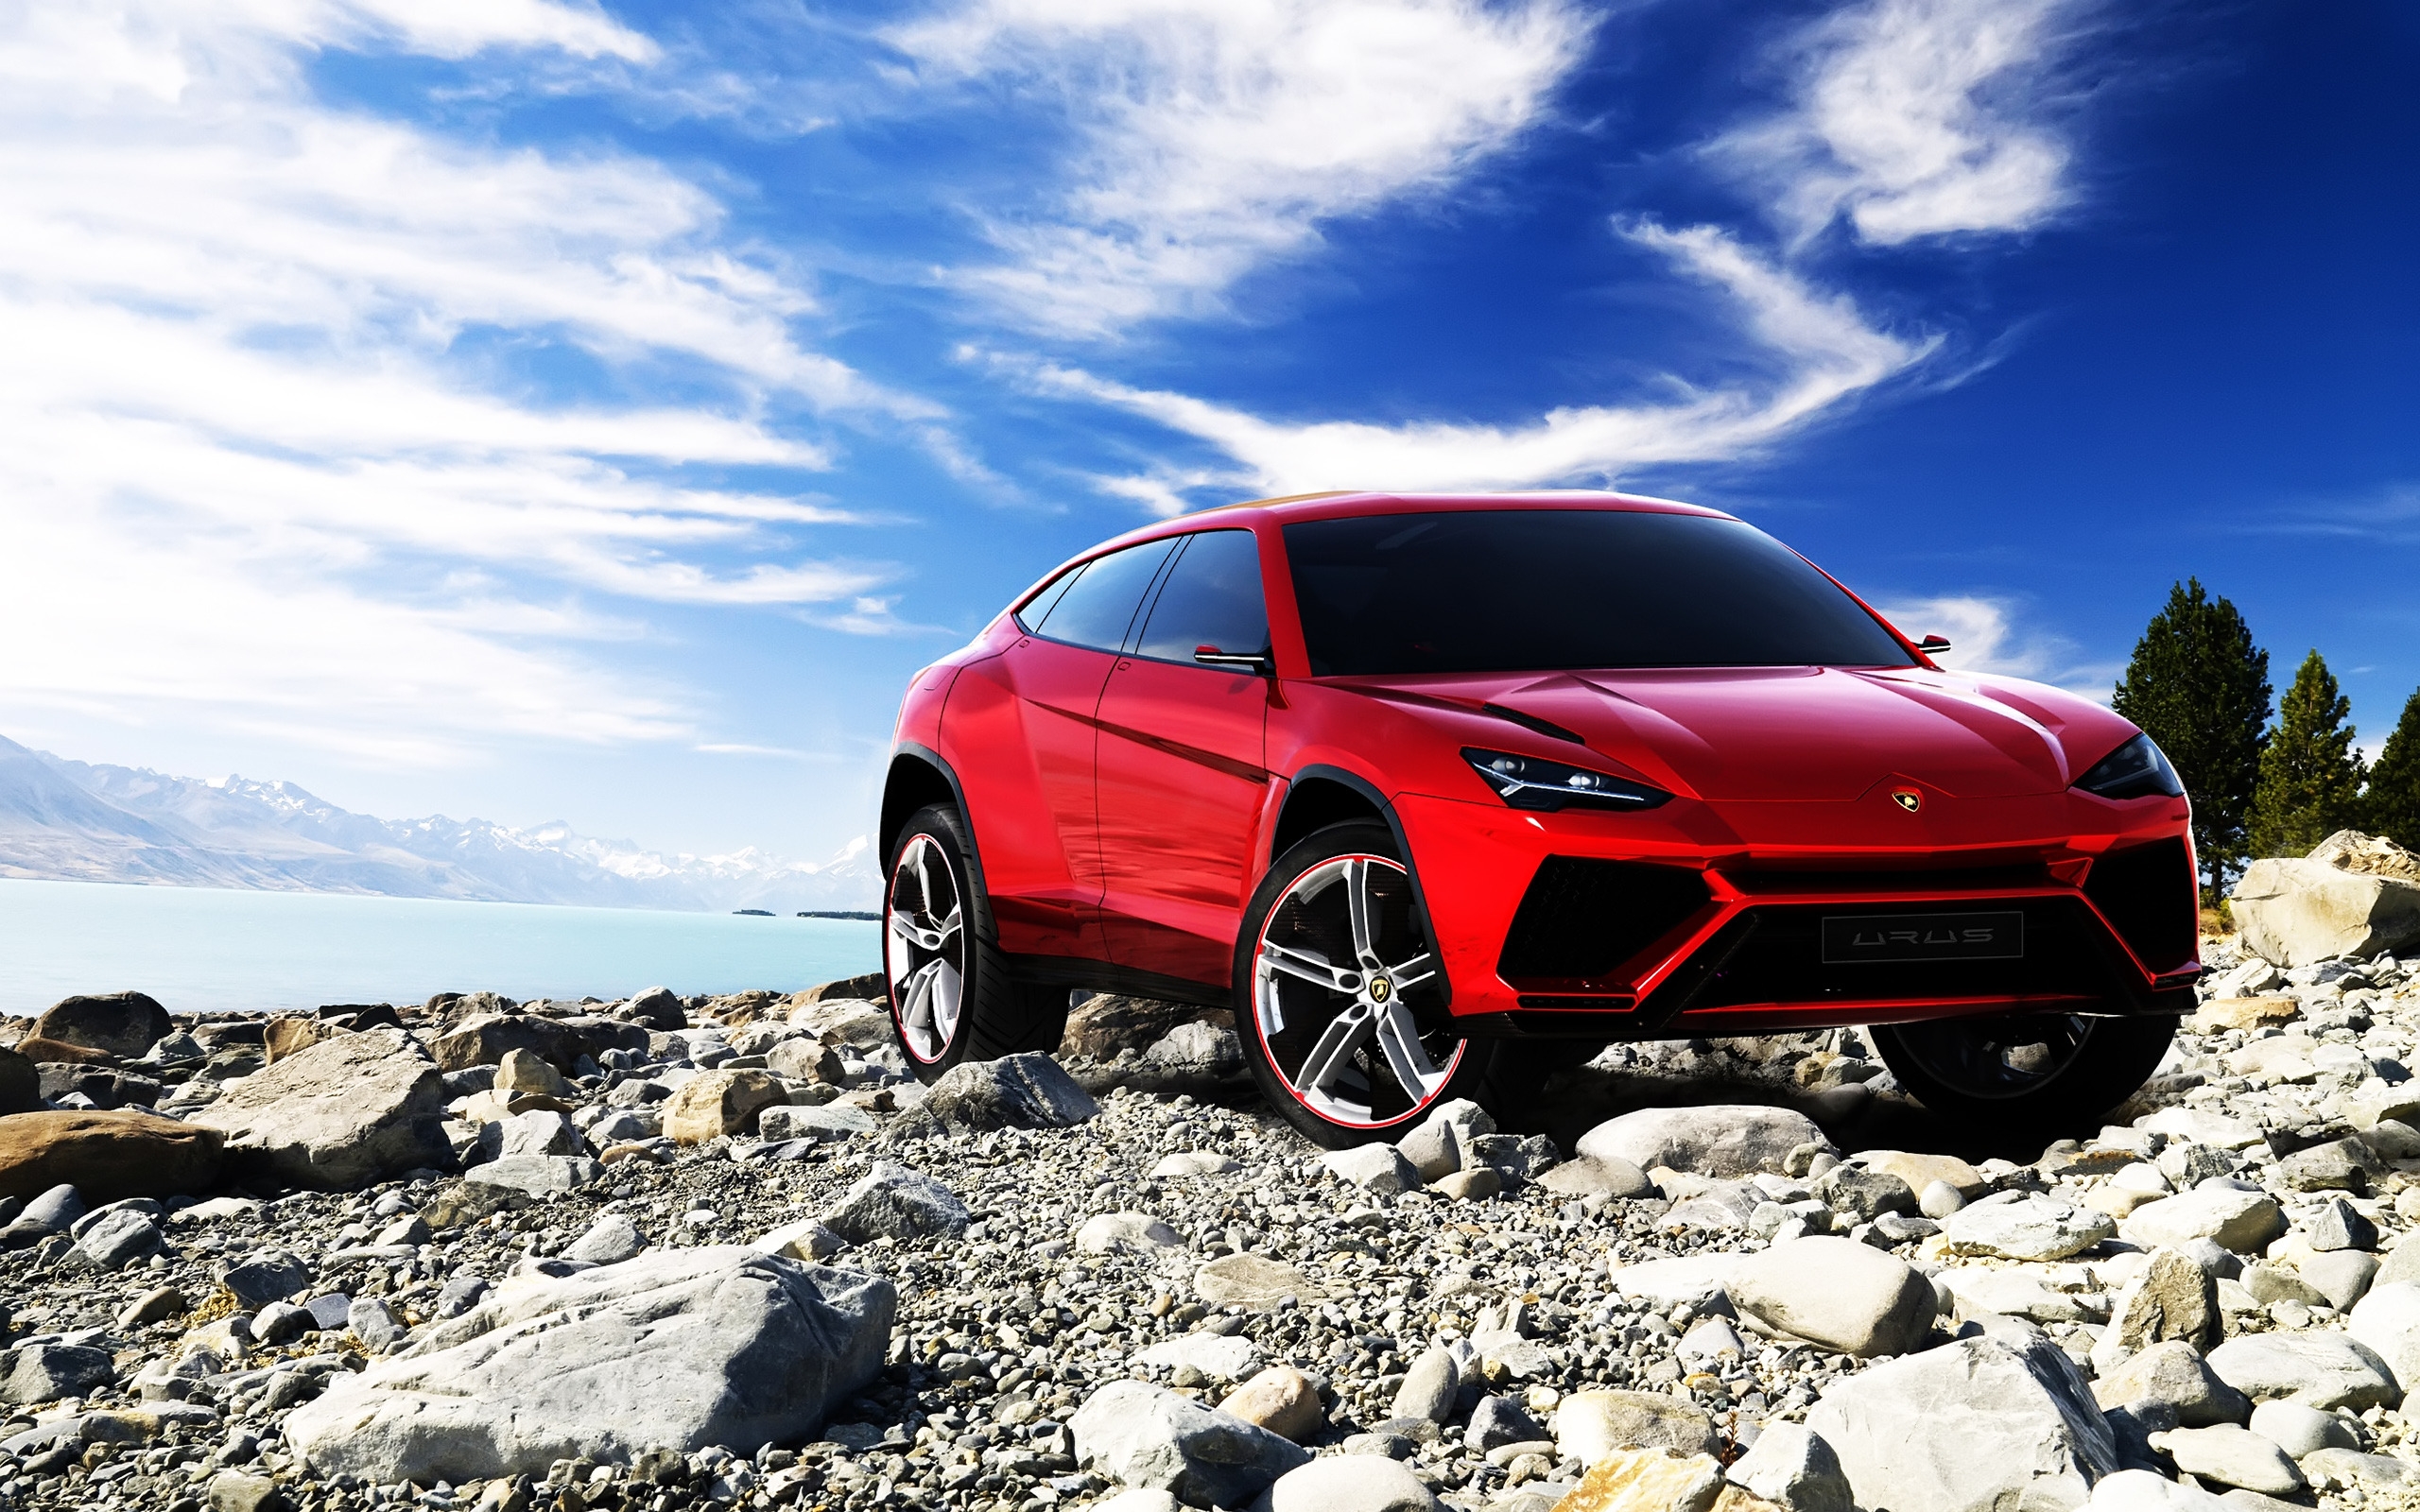 Lamborghini Urus Concept for 2560 x 1600 widescreen resolution